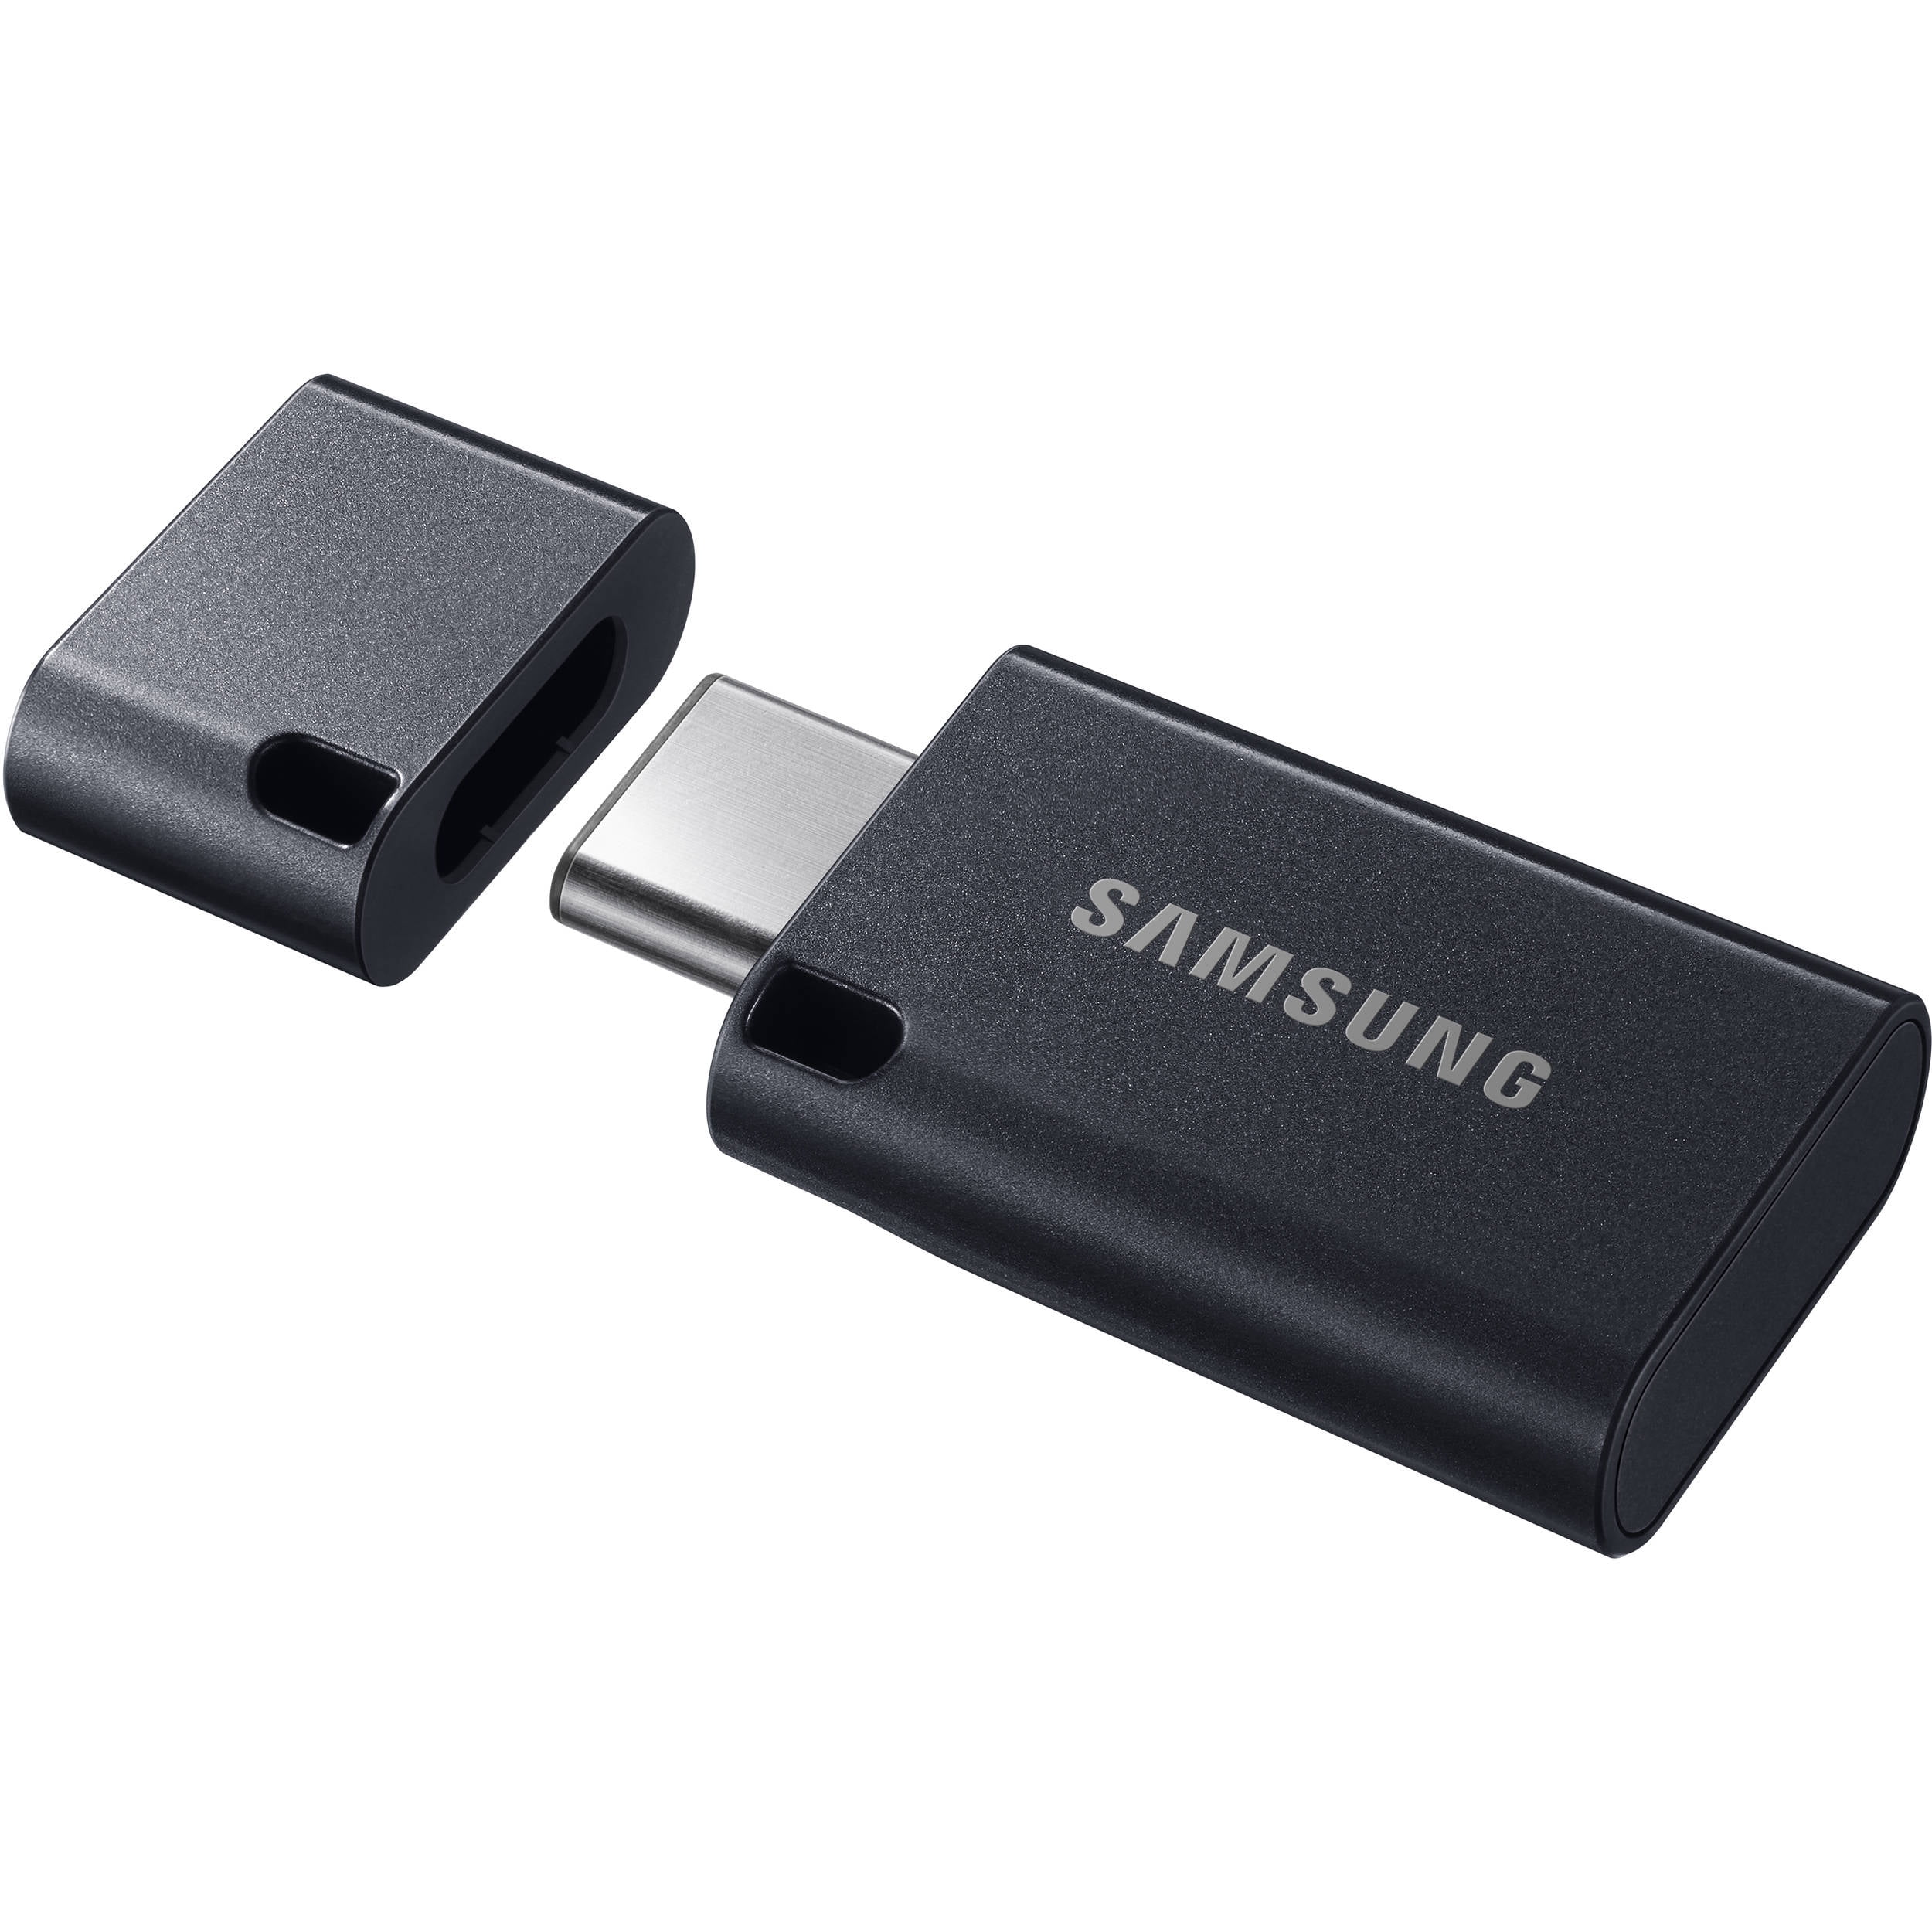 Samsung USB Type-C/USB 3.1 Flash Drive 128GB - Walmart.com